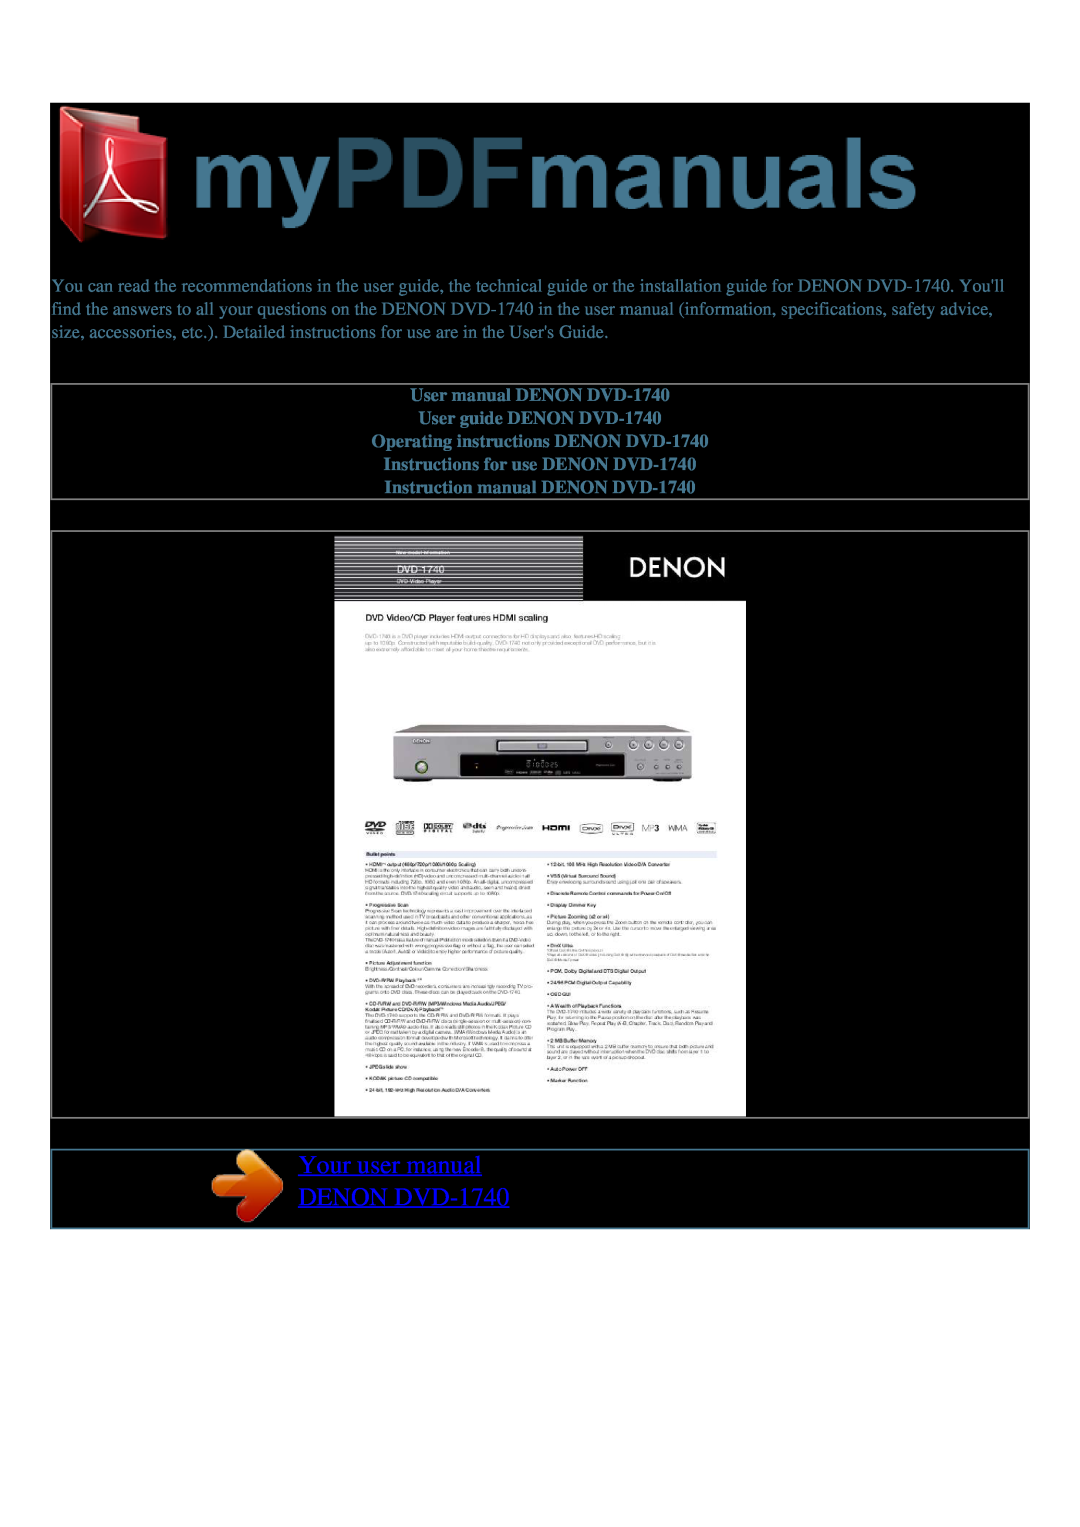 Denon user manual Your user manual DENON DVD-1740, User manual DENON DVD-1740 User guide DENON DVD-1740 